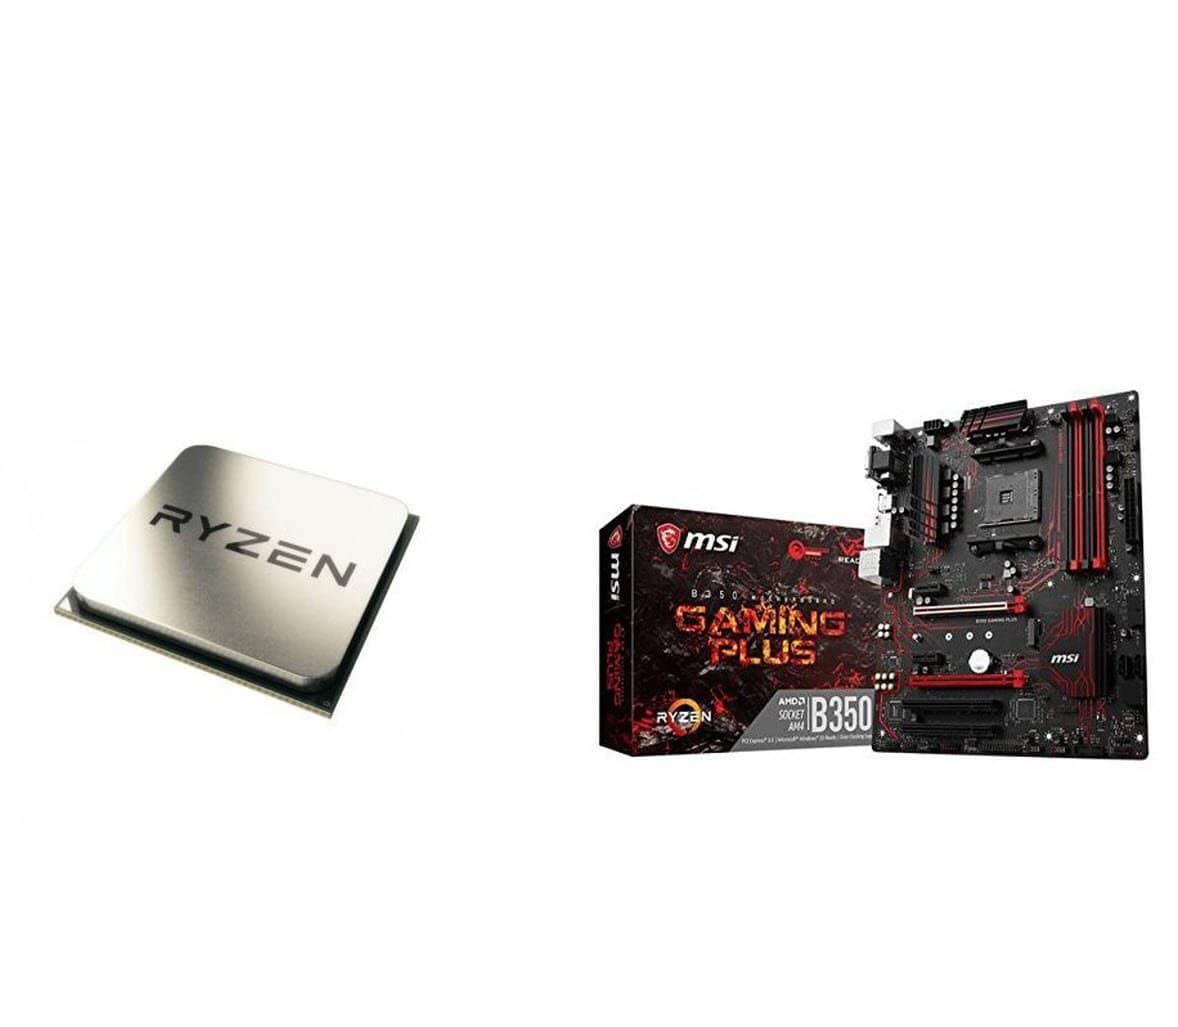 AMD Ryzen 5 1600X Processor (YD160XBCAEWOF) and MSI Gaming AMD Ryzen B350 DDR4 VR Ready HDMI USB 3 ATX Motherboard